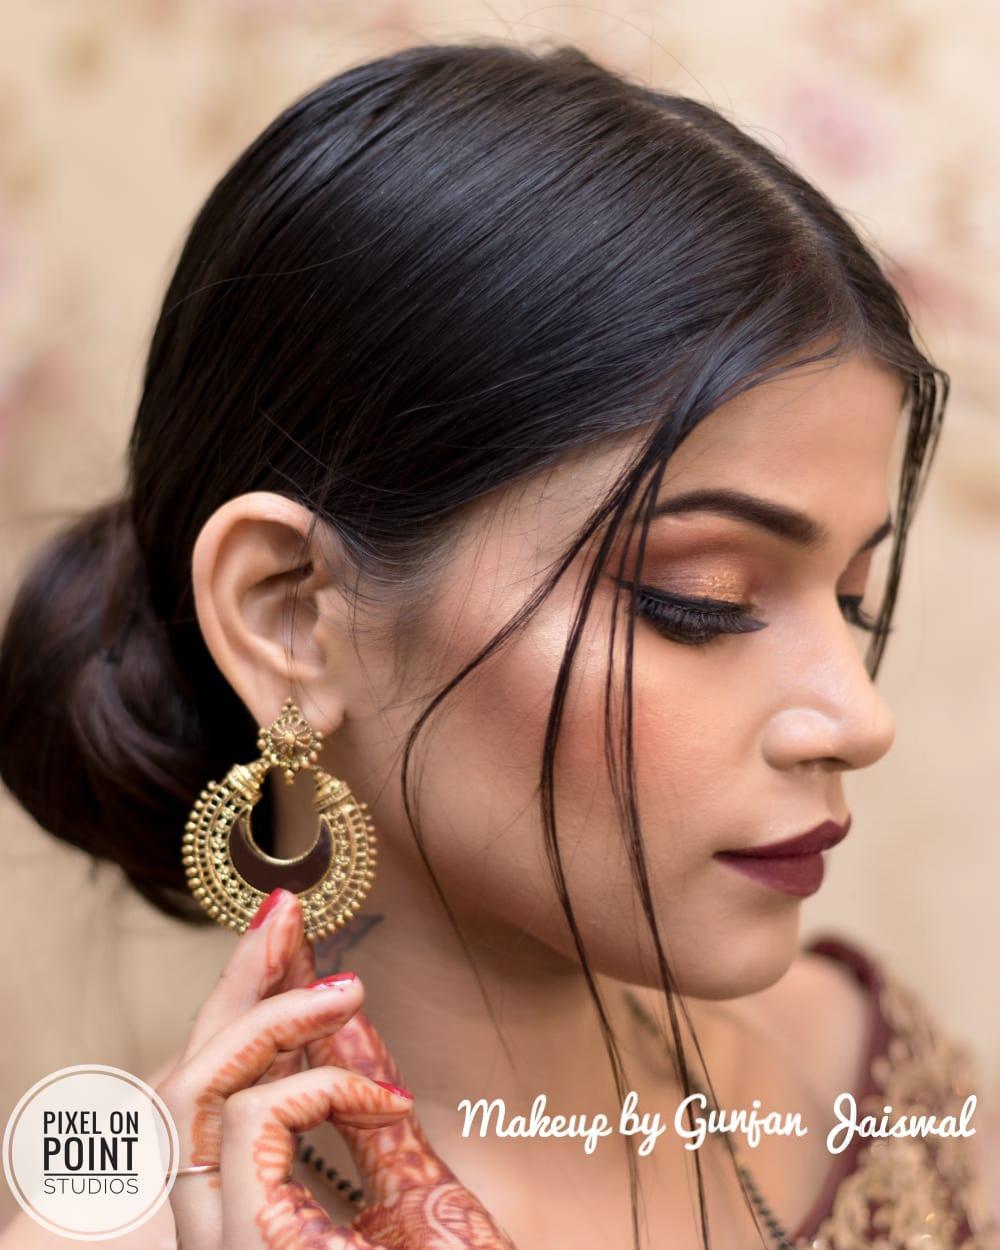 Dazzlerr - Pooja Beauty Academy